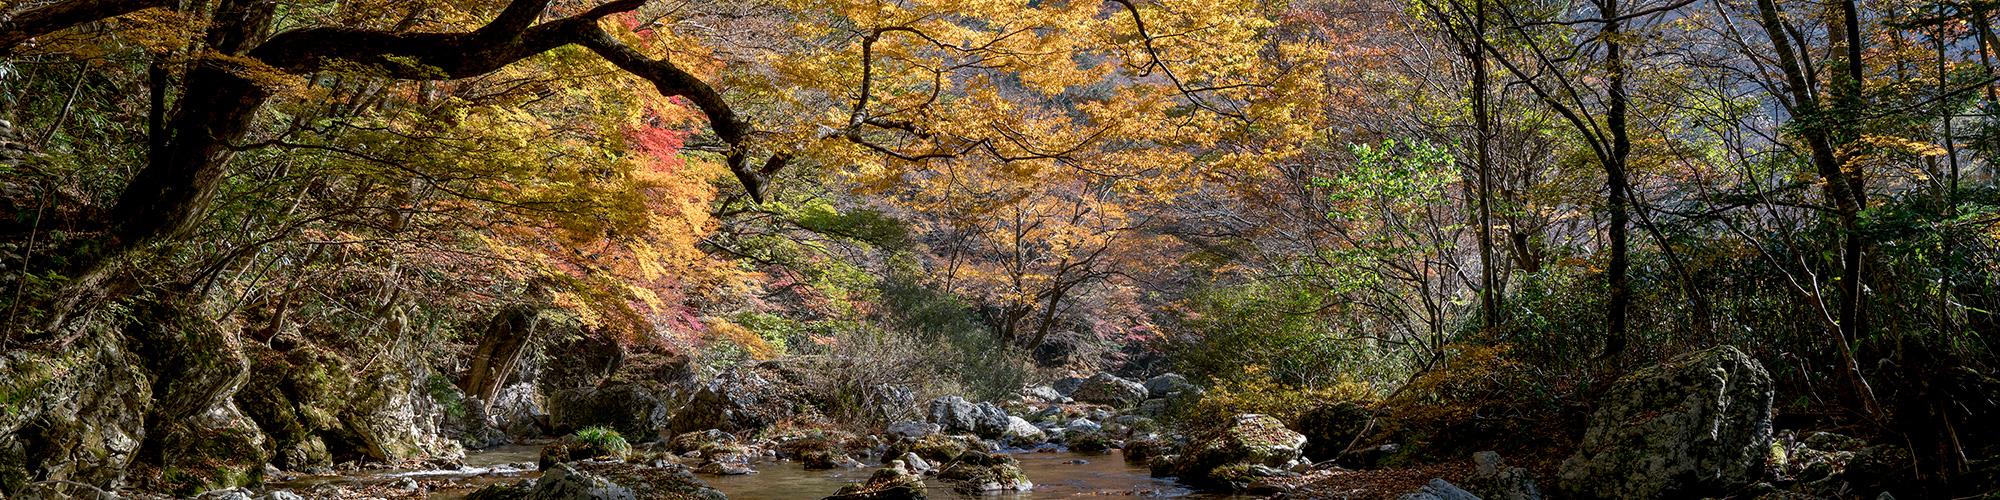 小田深山渓谷の紅葉